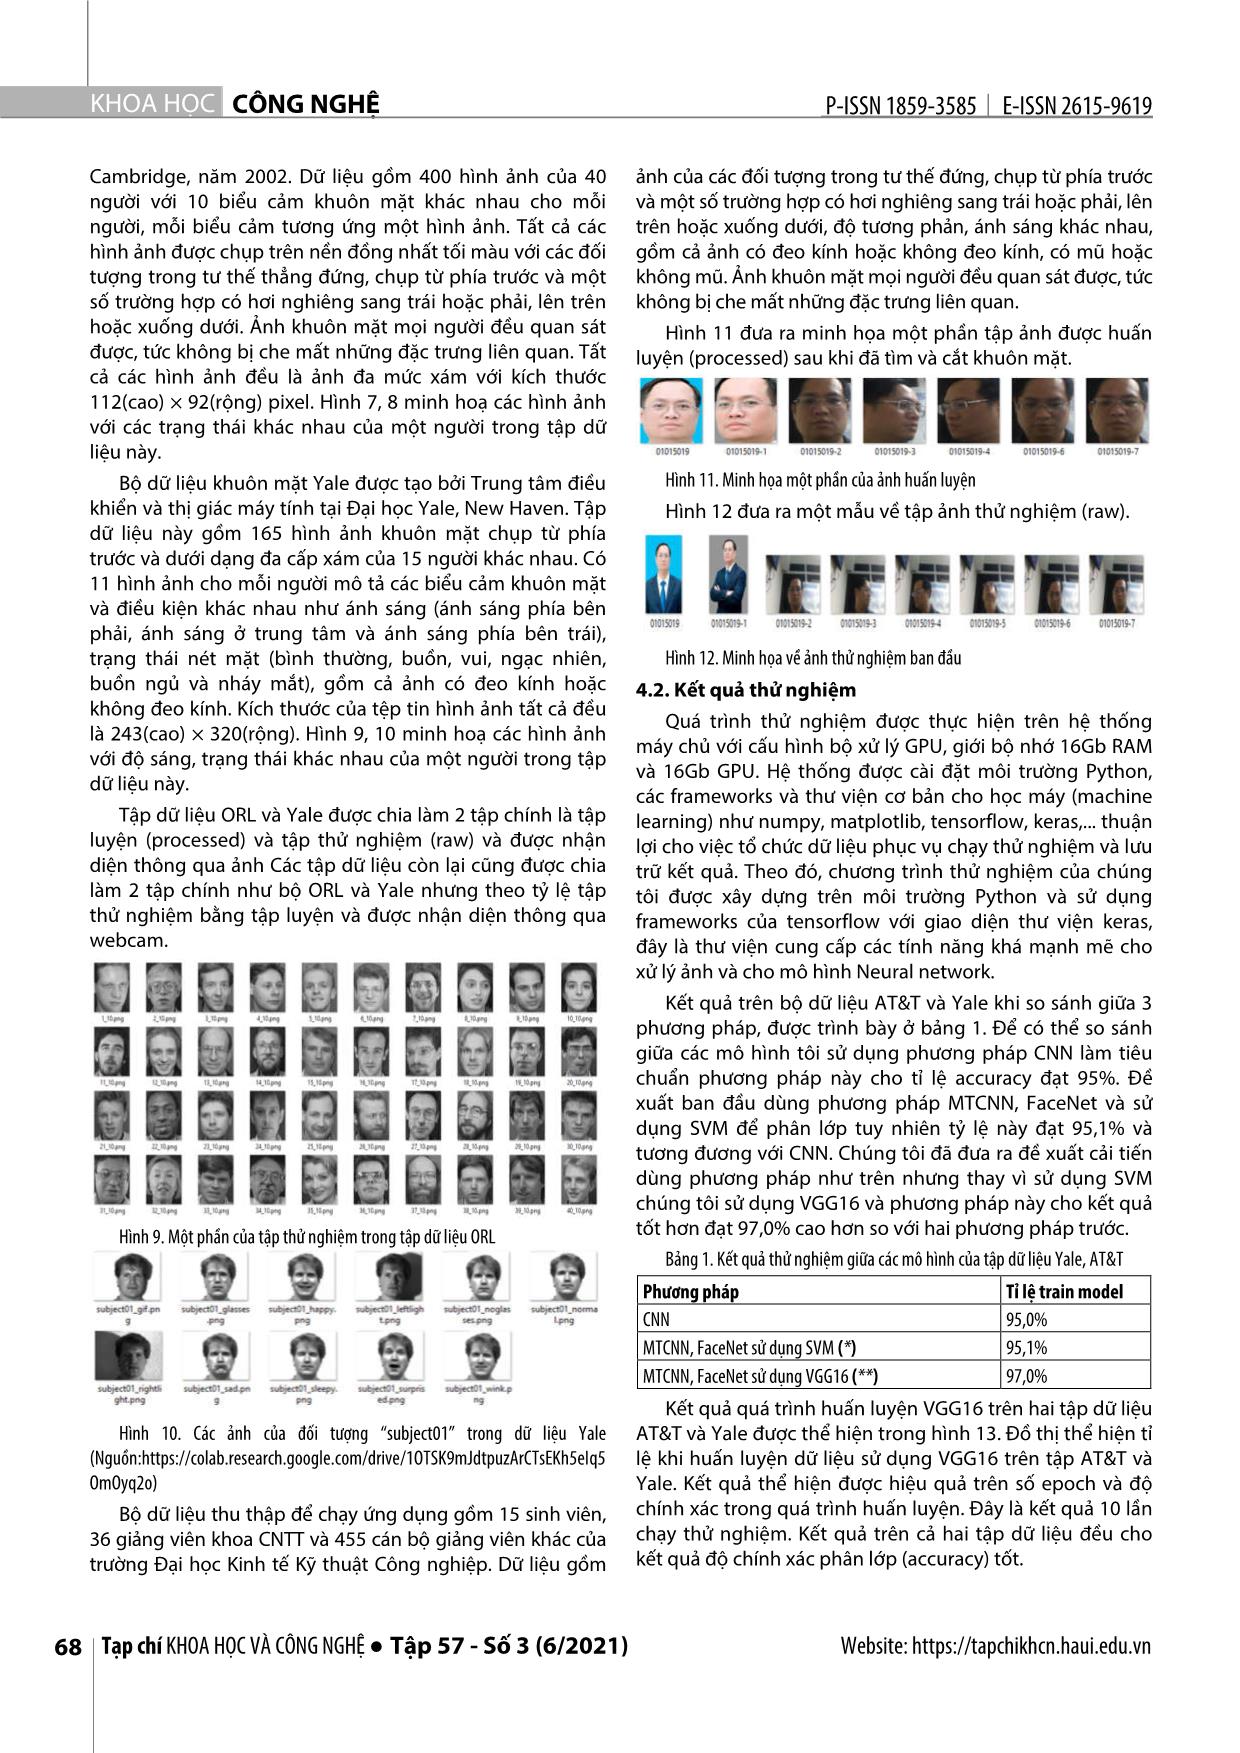 Nhận diện khuôn mặt sử dụng mạng nơron tích chập xếp chồng và mô hình FaceNet trang 5